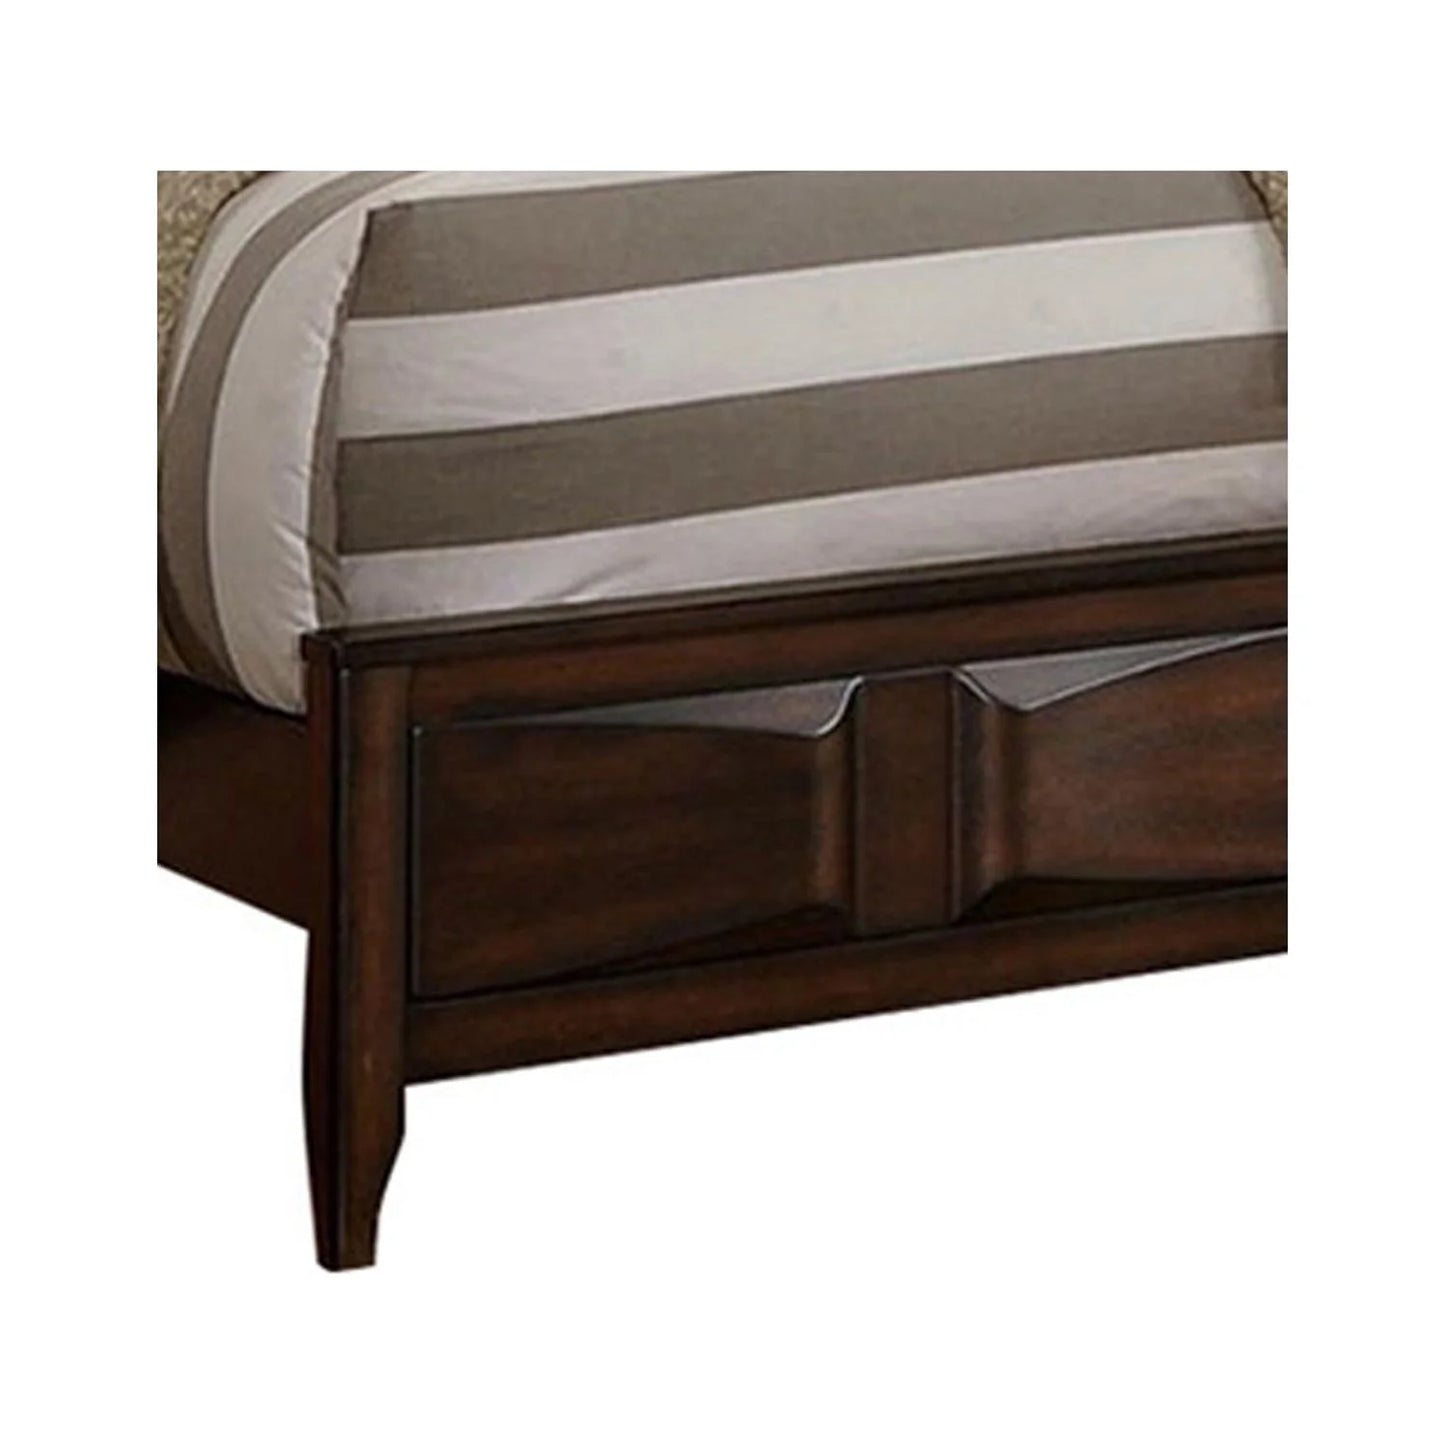 BenJara Crisp And Fine Lined Wooden C.King Bed With 3D Design on Front Board, Oak-Color:Oak Brown